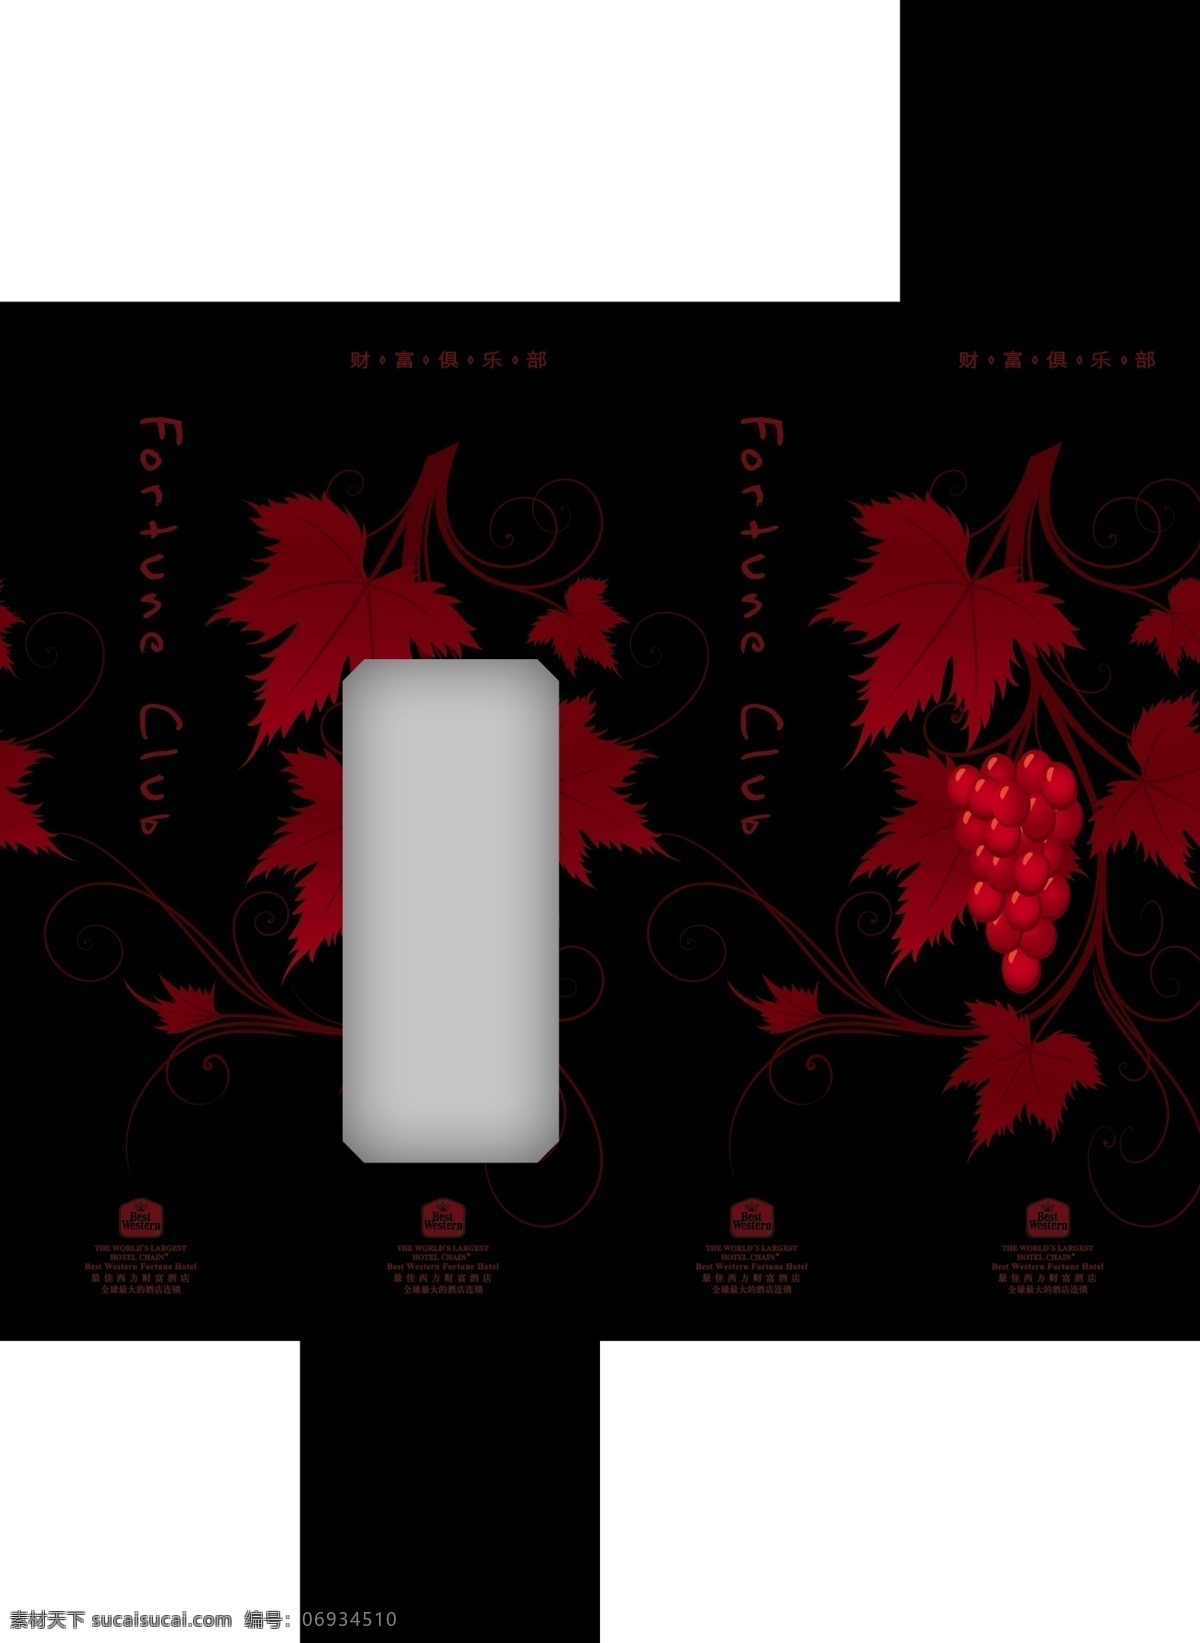 深色 系 纸盒 设计制作 效果图 抽纸设计 分层素材 黑色 红色 葡萄 树叶 艺术字 纸盒设计 盒子印刷素材 袋子素材 纸盒产品 psd源文件